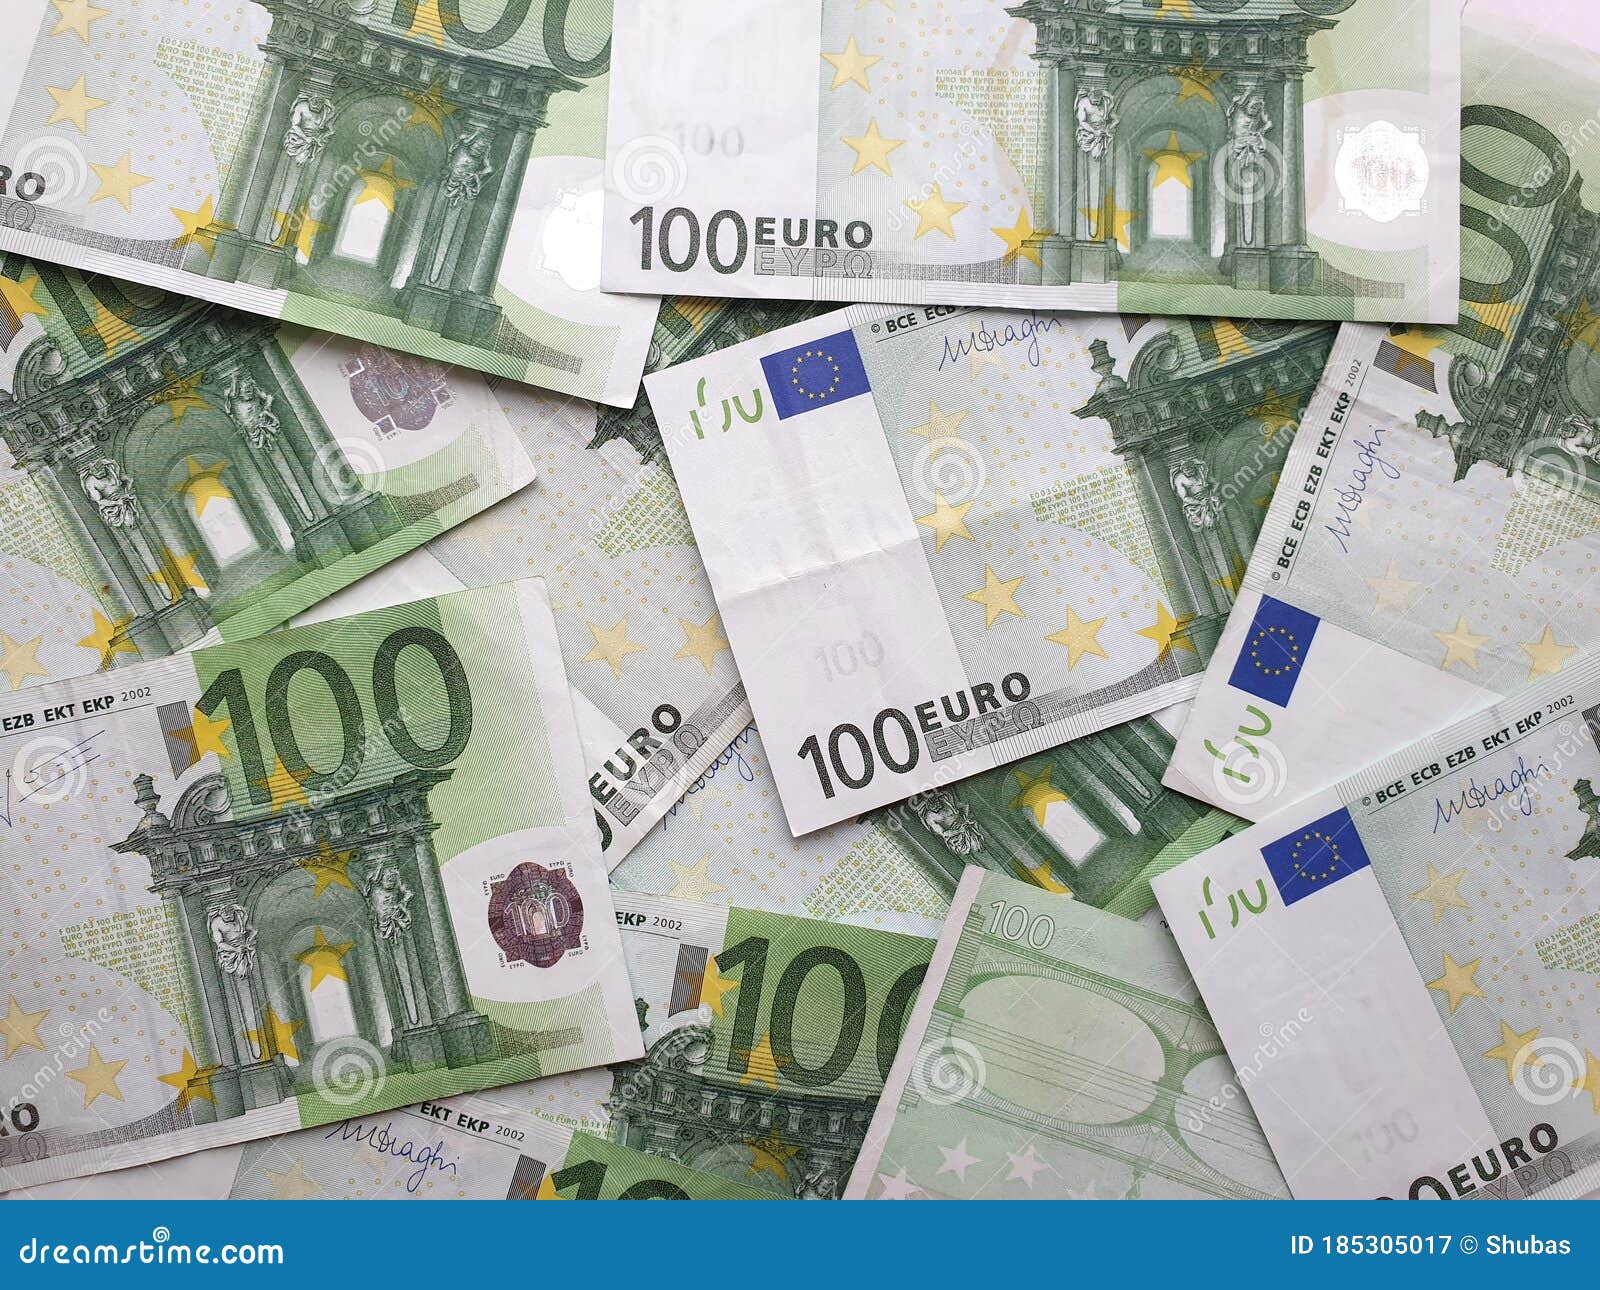 您知道美元、欧元、日元、英镑等对人民币汇率变动影响有多大吗？__财经头条